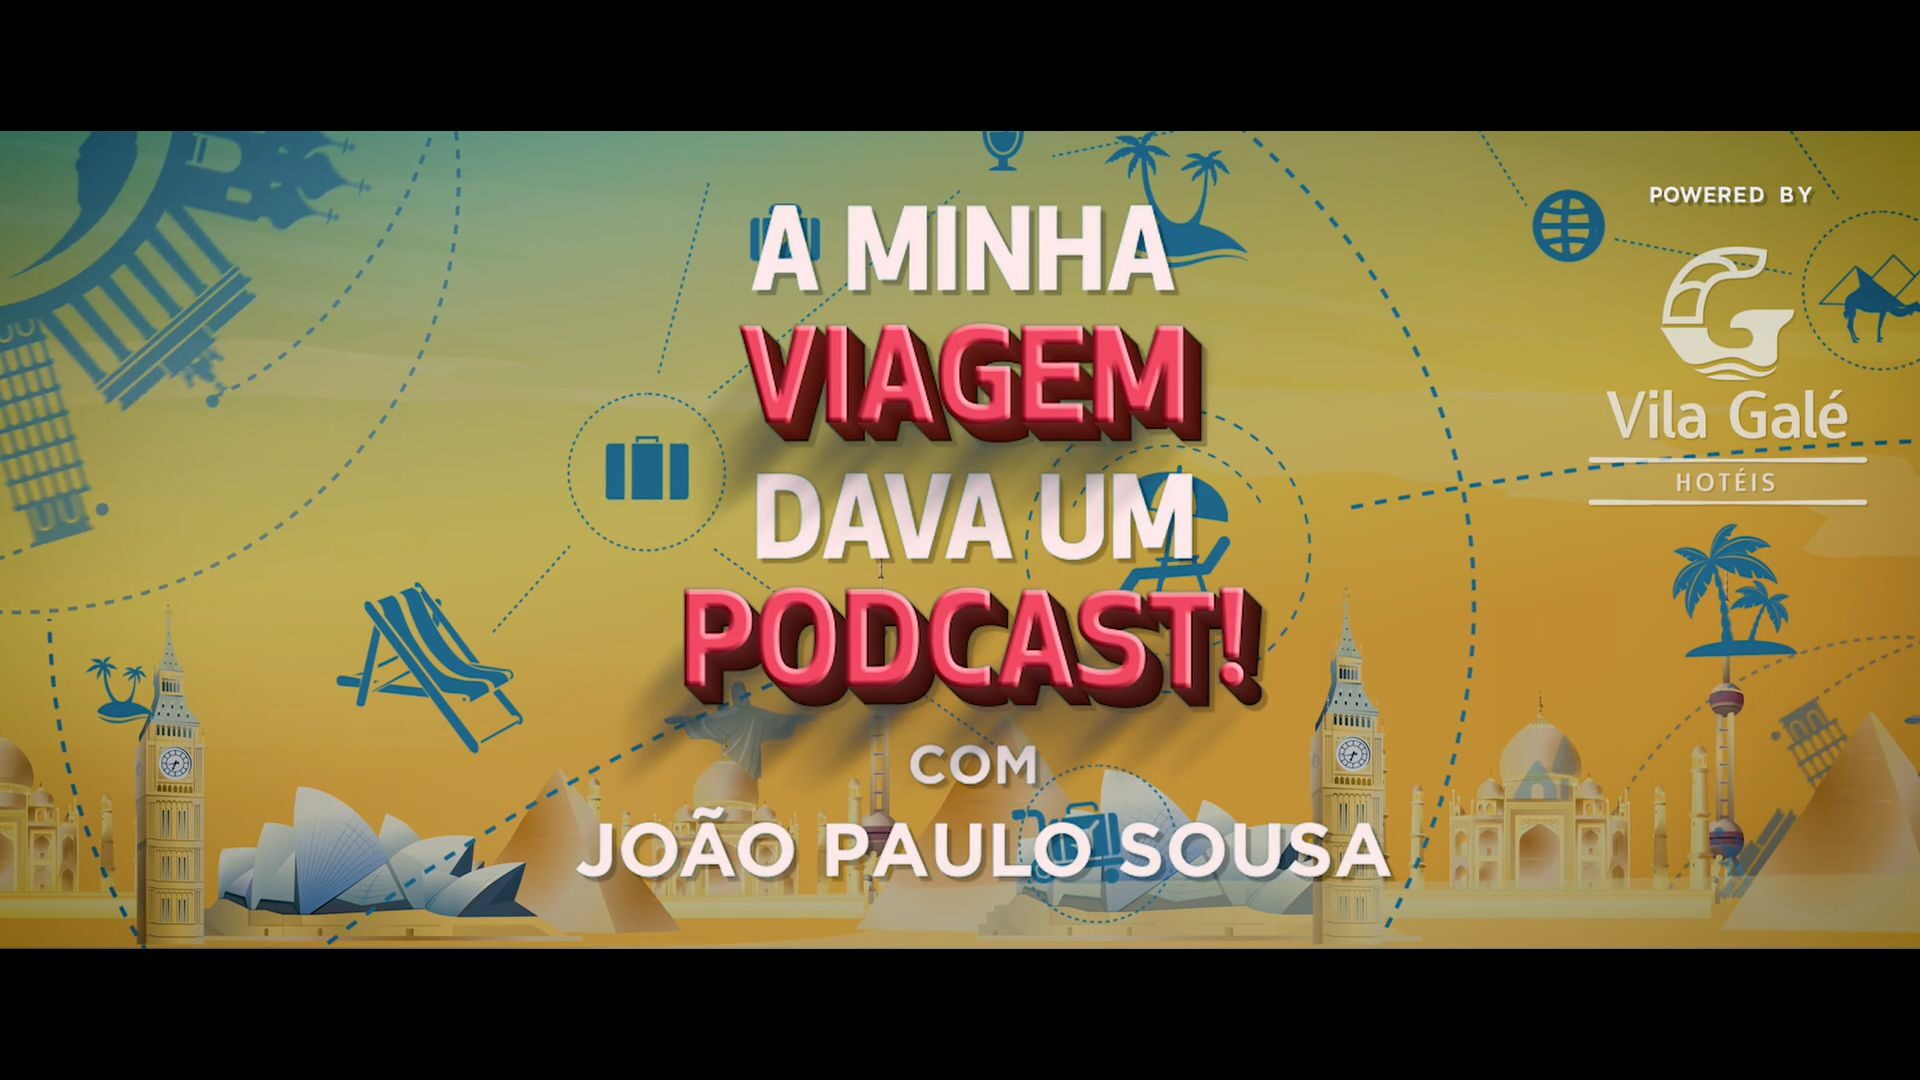 “A minha viagem dava um podcast” com o Vila Galé